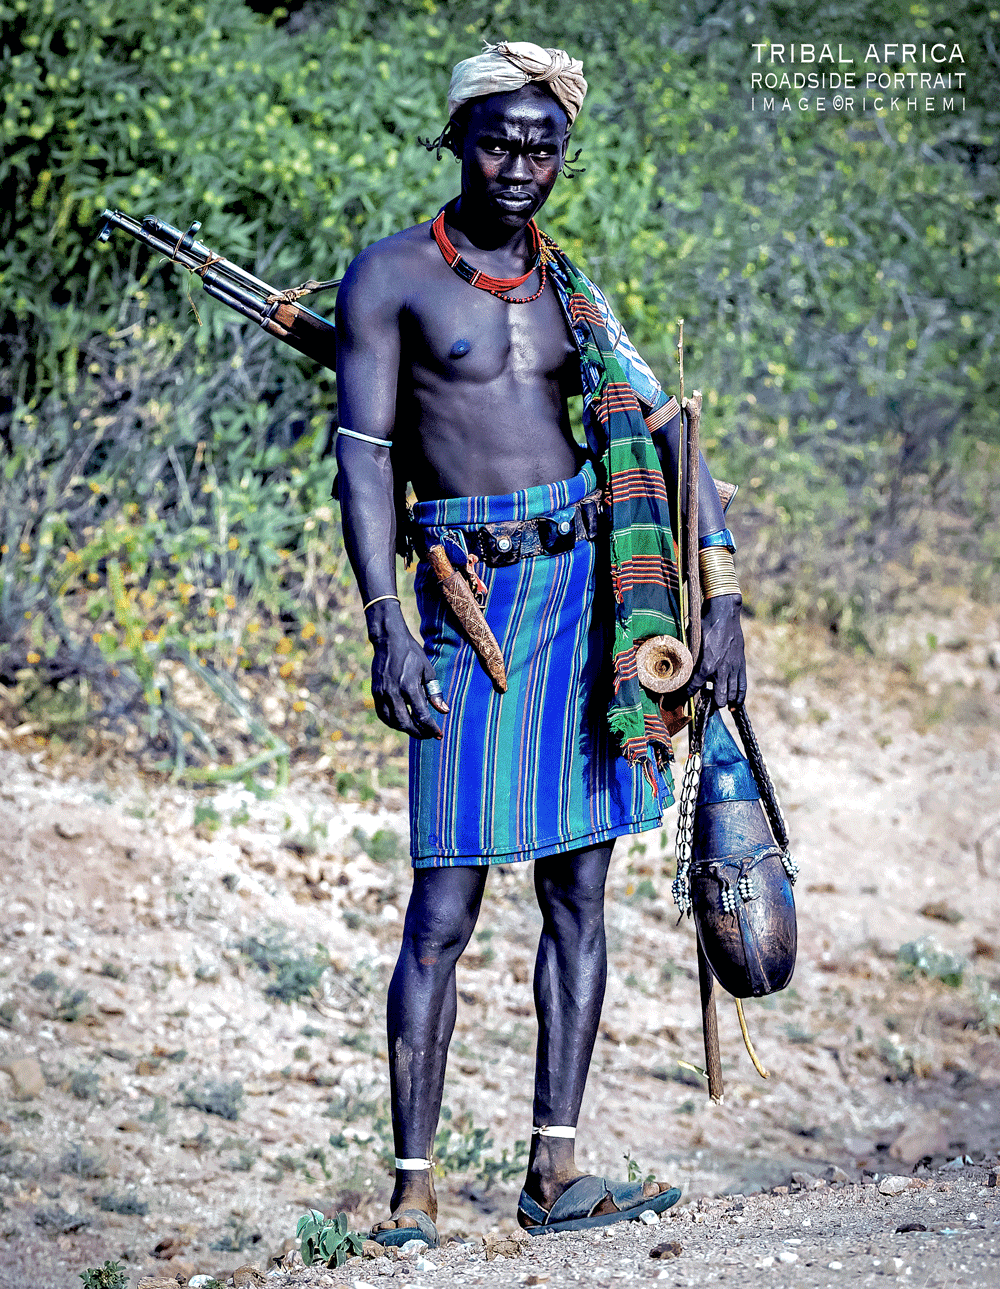  tribal lands Africa, about page Rick Hemi, DSLR image by Rick Hemi 